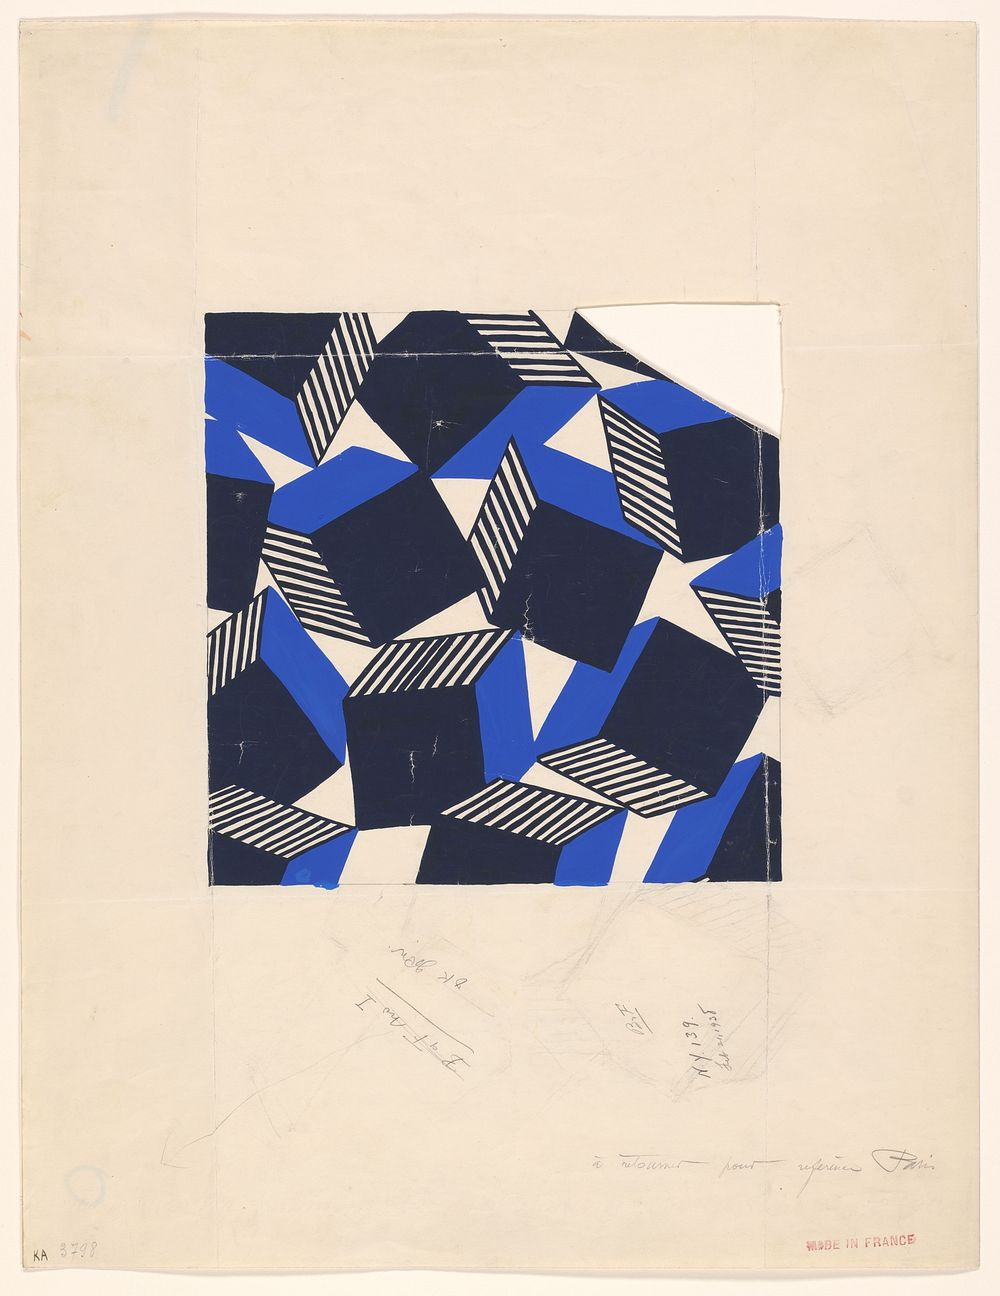 Ontwerp voor een zijden stof (c. 1938) by anonymous and Bianchini Férier